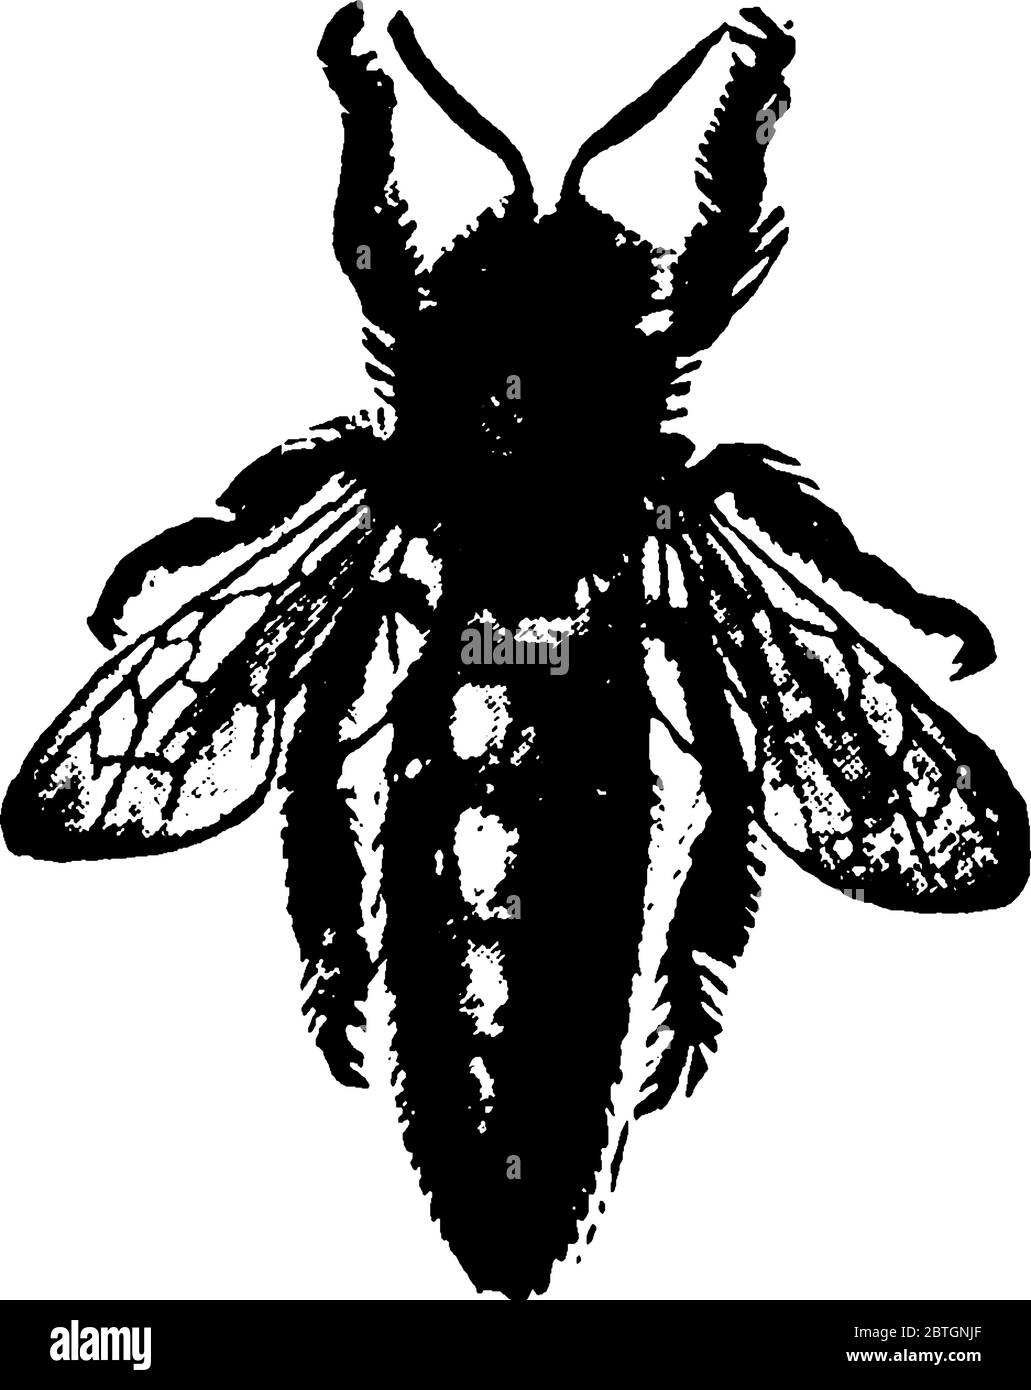 Una ape di miele è un insetto eusociale, che vola nella famiglia Apidi, che vive in colonie. Questa figura rappresenta la regina del miele ape, disegno di linea vintage Illustrazione Vettoriale